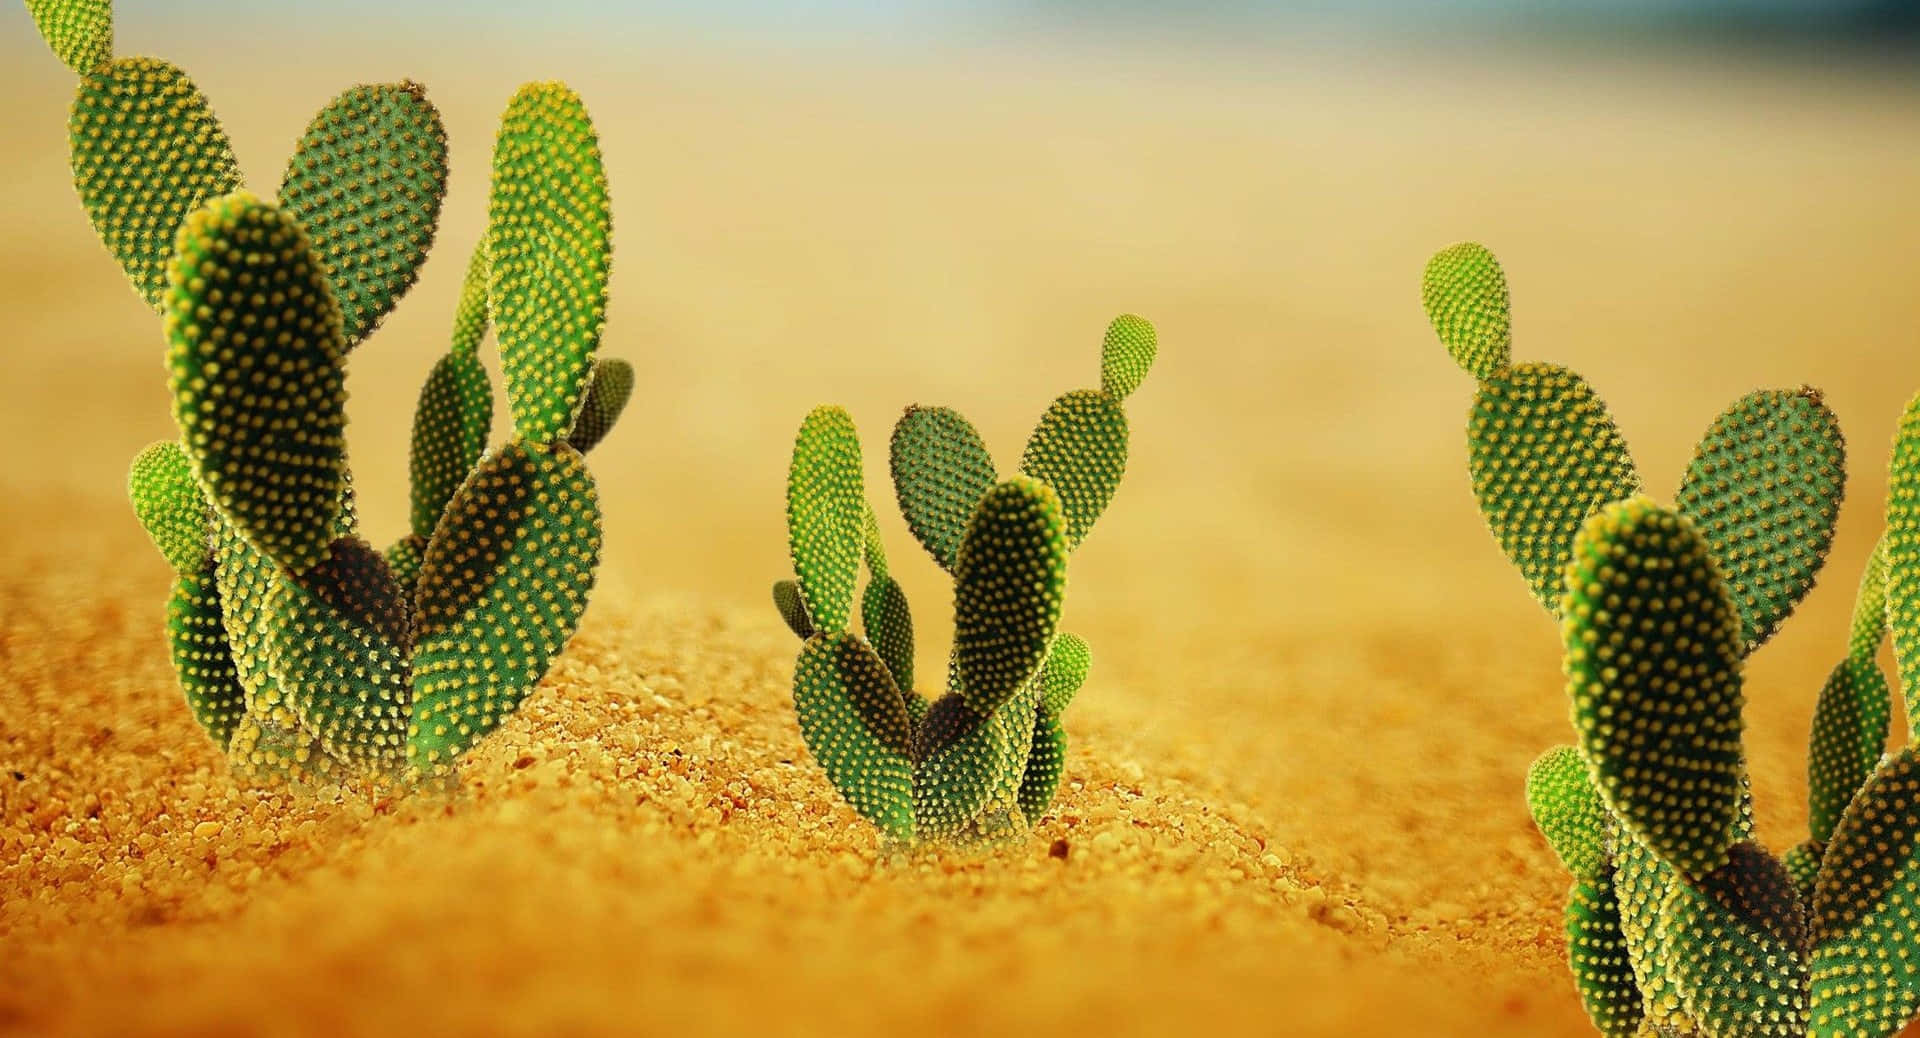 Sötbild På Kaktus Med Kaninöron.